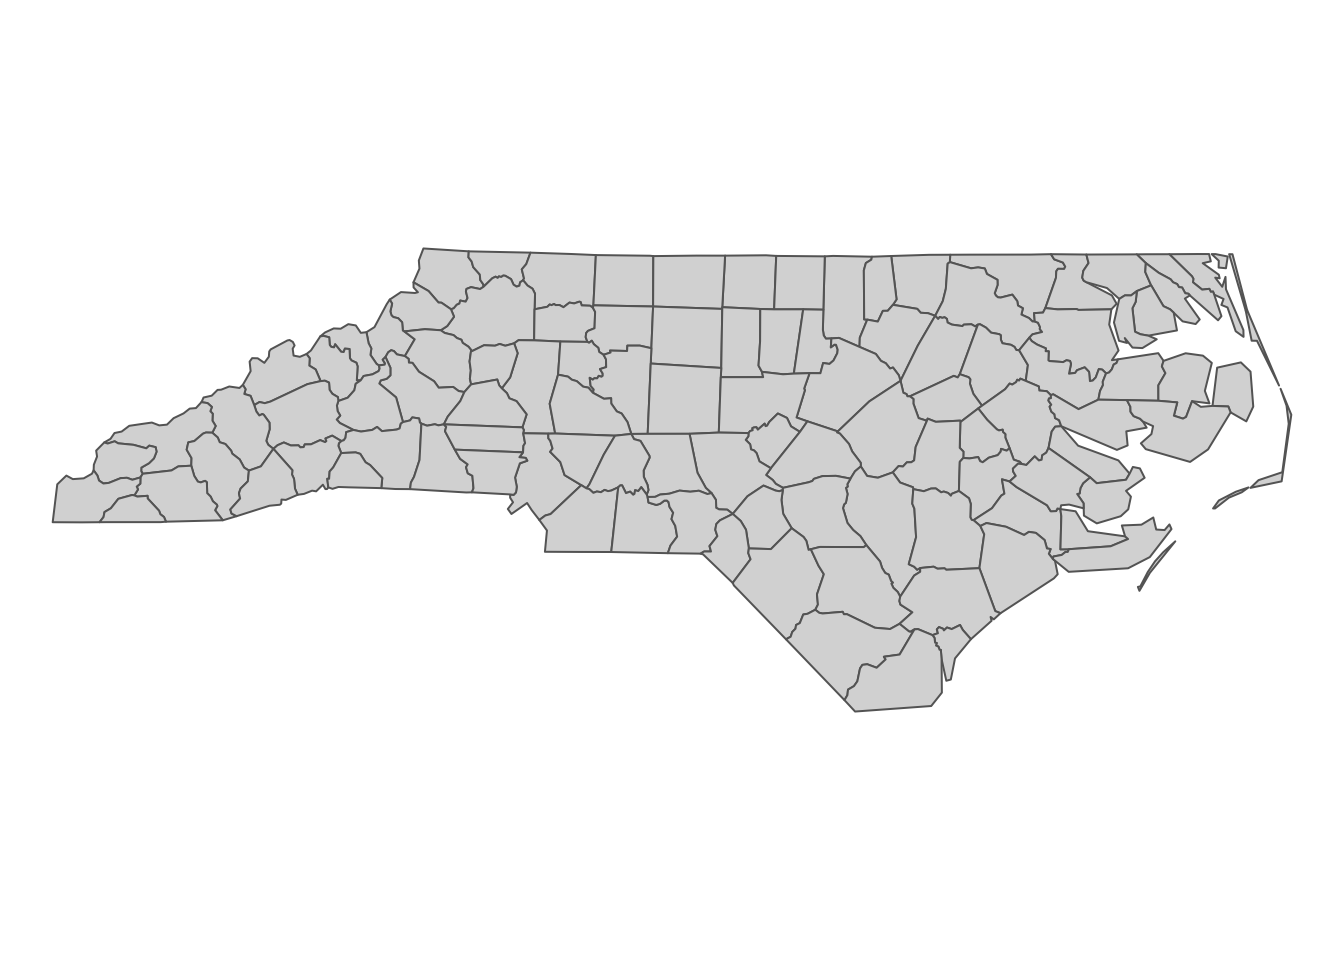 North Carolina county boundary